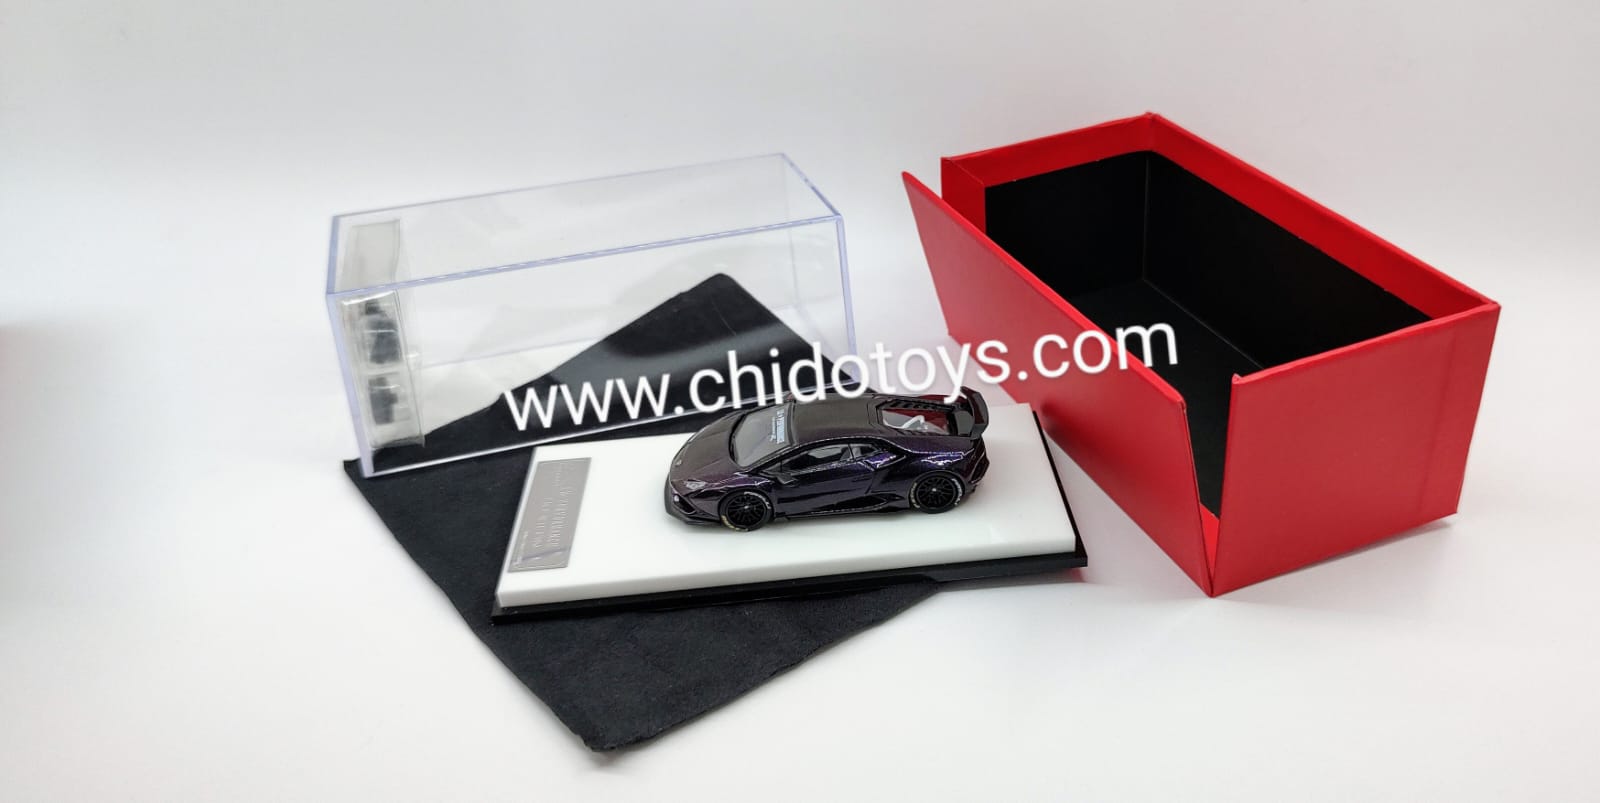 Auto a escala 1/64 modelo Huracan Purpura Carbon - Chido Toys